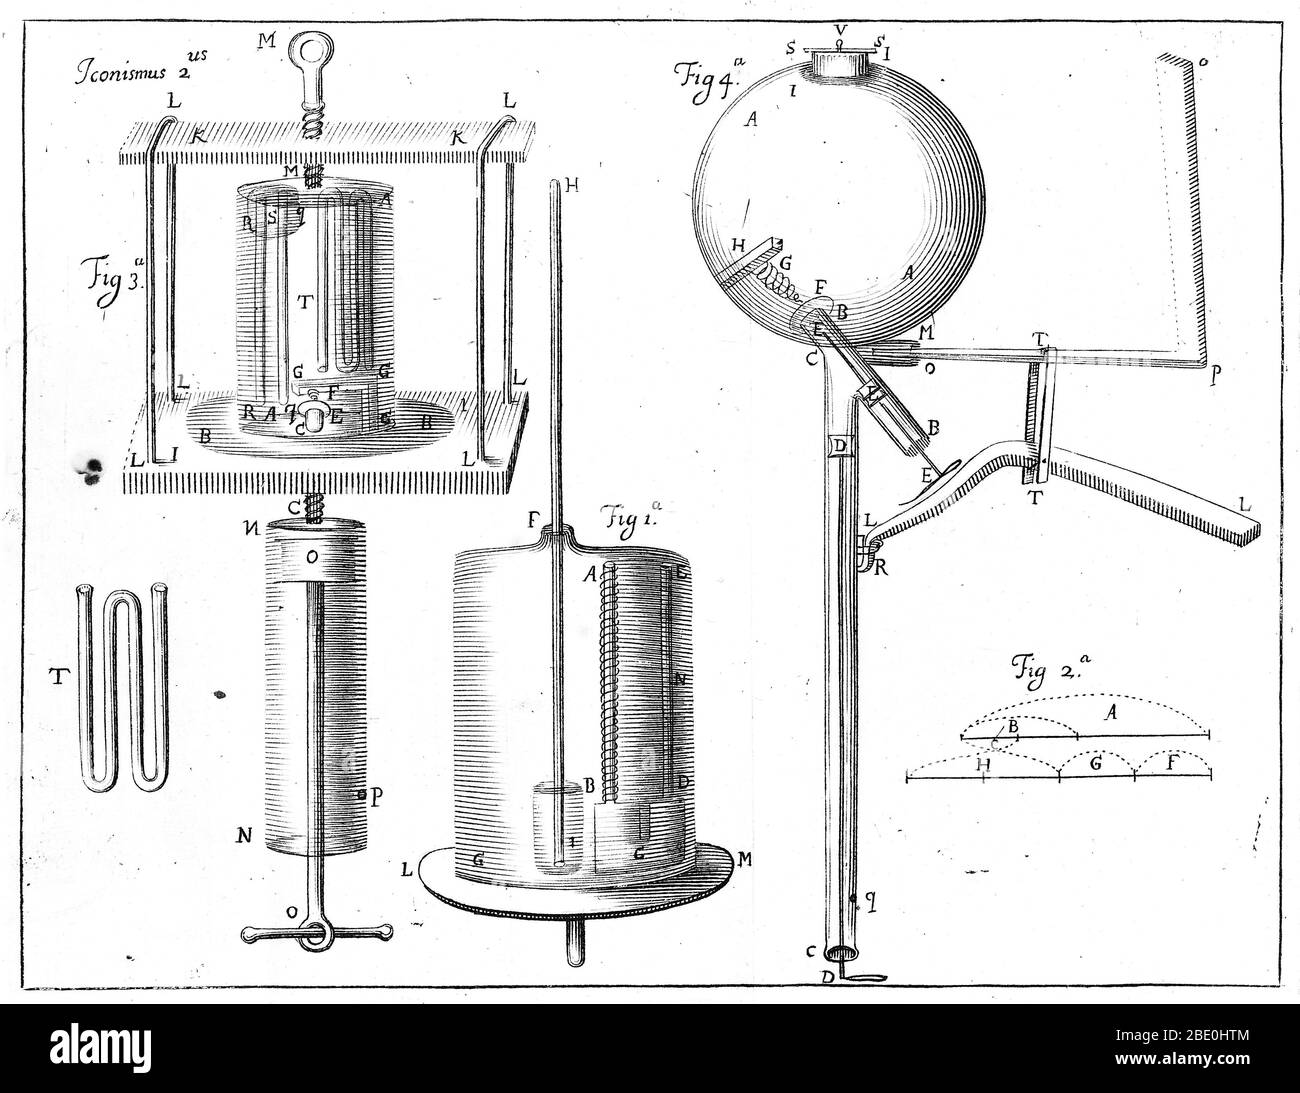 Appareil de Robert Boyle pour la compression de l'air. Figure 1 : jauge Mecuriale. Figure 3 : appareils de compression de l'air Figure 4 : un pistolet à vent. De 'la poursuite de nouvelles expériences physico-mécaniques touchant le ressort et le poids de l'air,' par Robert Boyle, 1682. Robert Boyle (1627-1691) était un philosophe naturel, chimiste, physicien et inventeur du XVIIe siècle. Bien que ses recherches aient clairement ses racines dans la tradition alchimique, Boyle est largement considéré aujourd'hui comme le premier chimiste moderne, et donc l'un des fondateurs de la chimie moderne, et l'un des pionniers de la scienti expérimentale moderne Banque D'Images